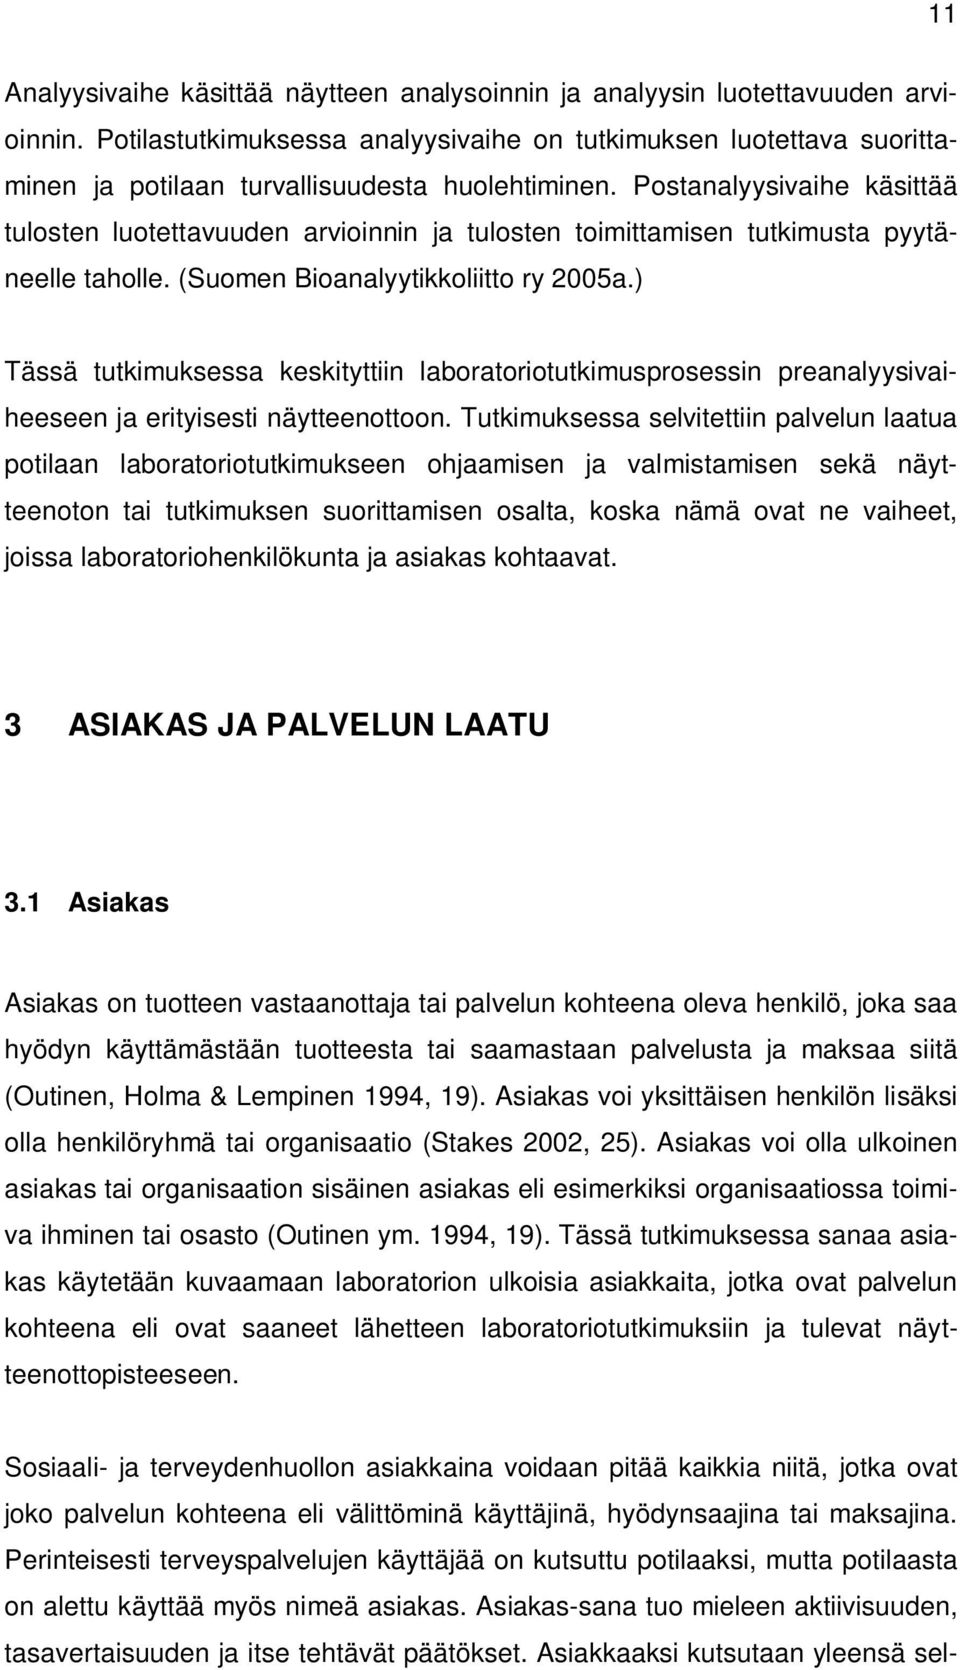 Postanalyysivaihe käsittää tulosten luotettavuuden arvioinnin ja tulosten toimittamisen tutkimusta pyytäneelle taholle. (Suomen Bioanalyytikkoliitto ry 2005a.